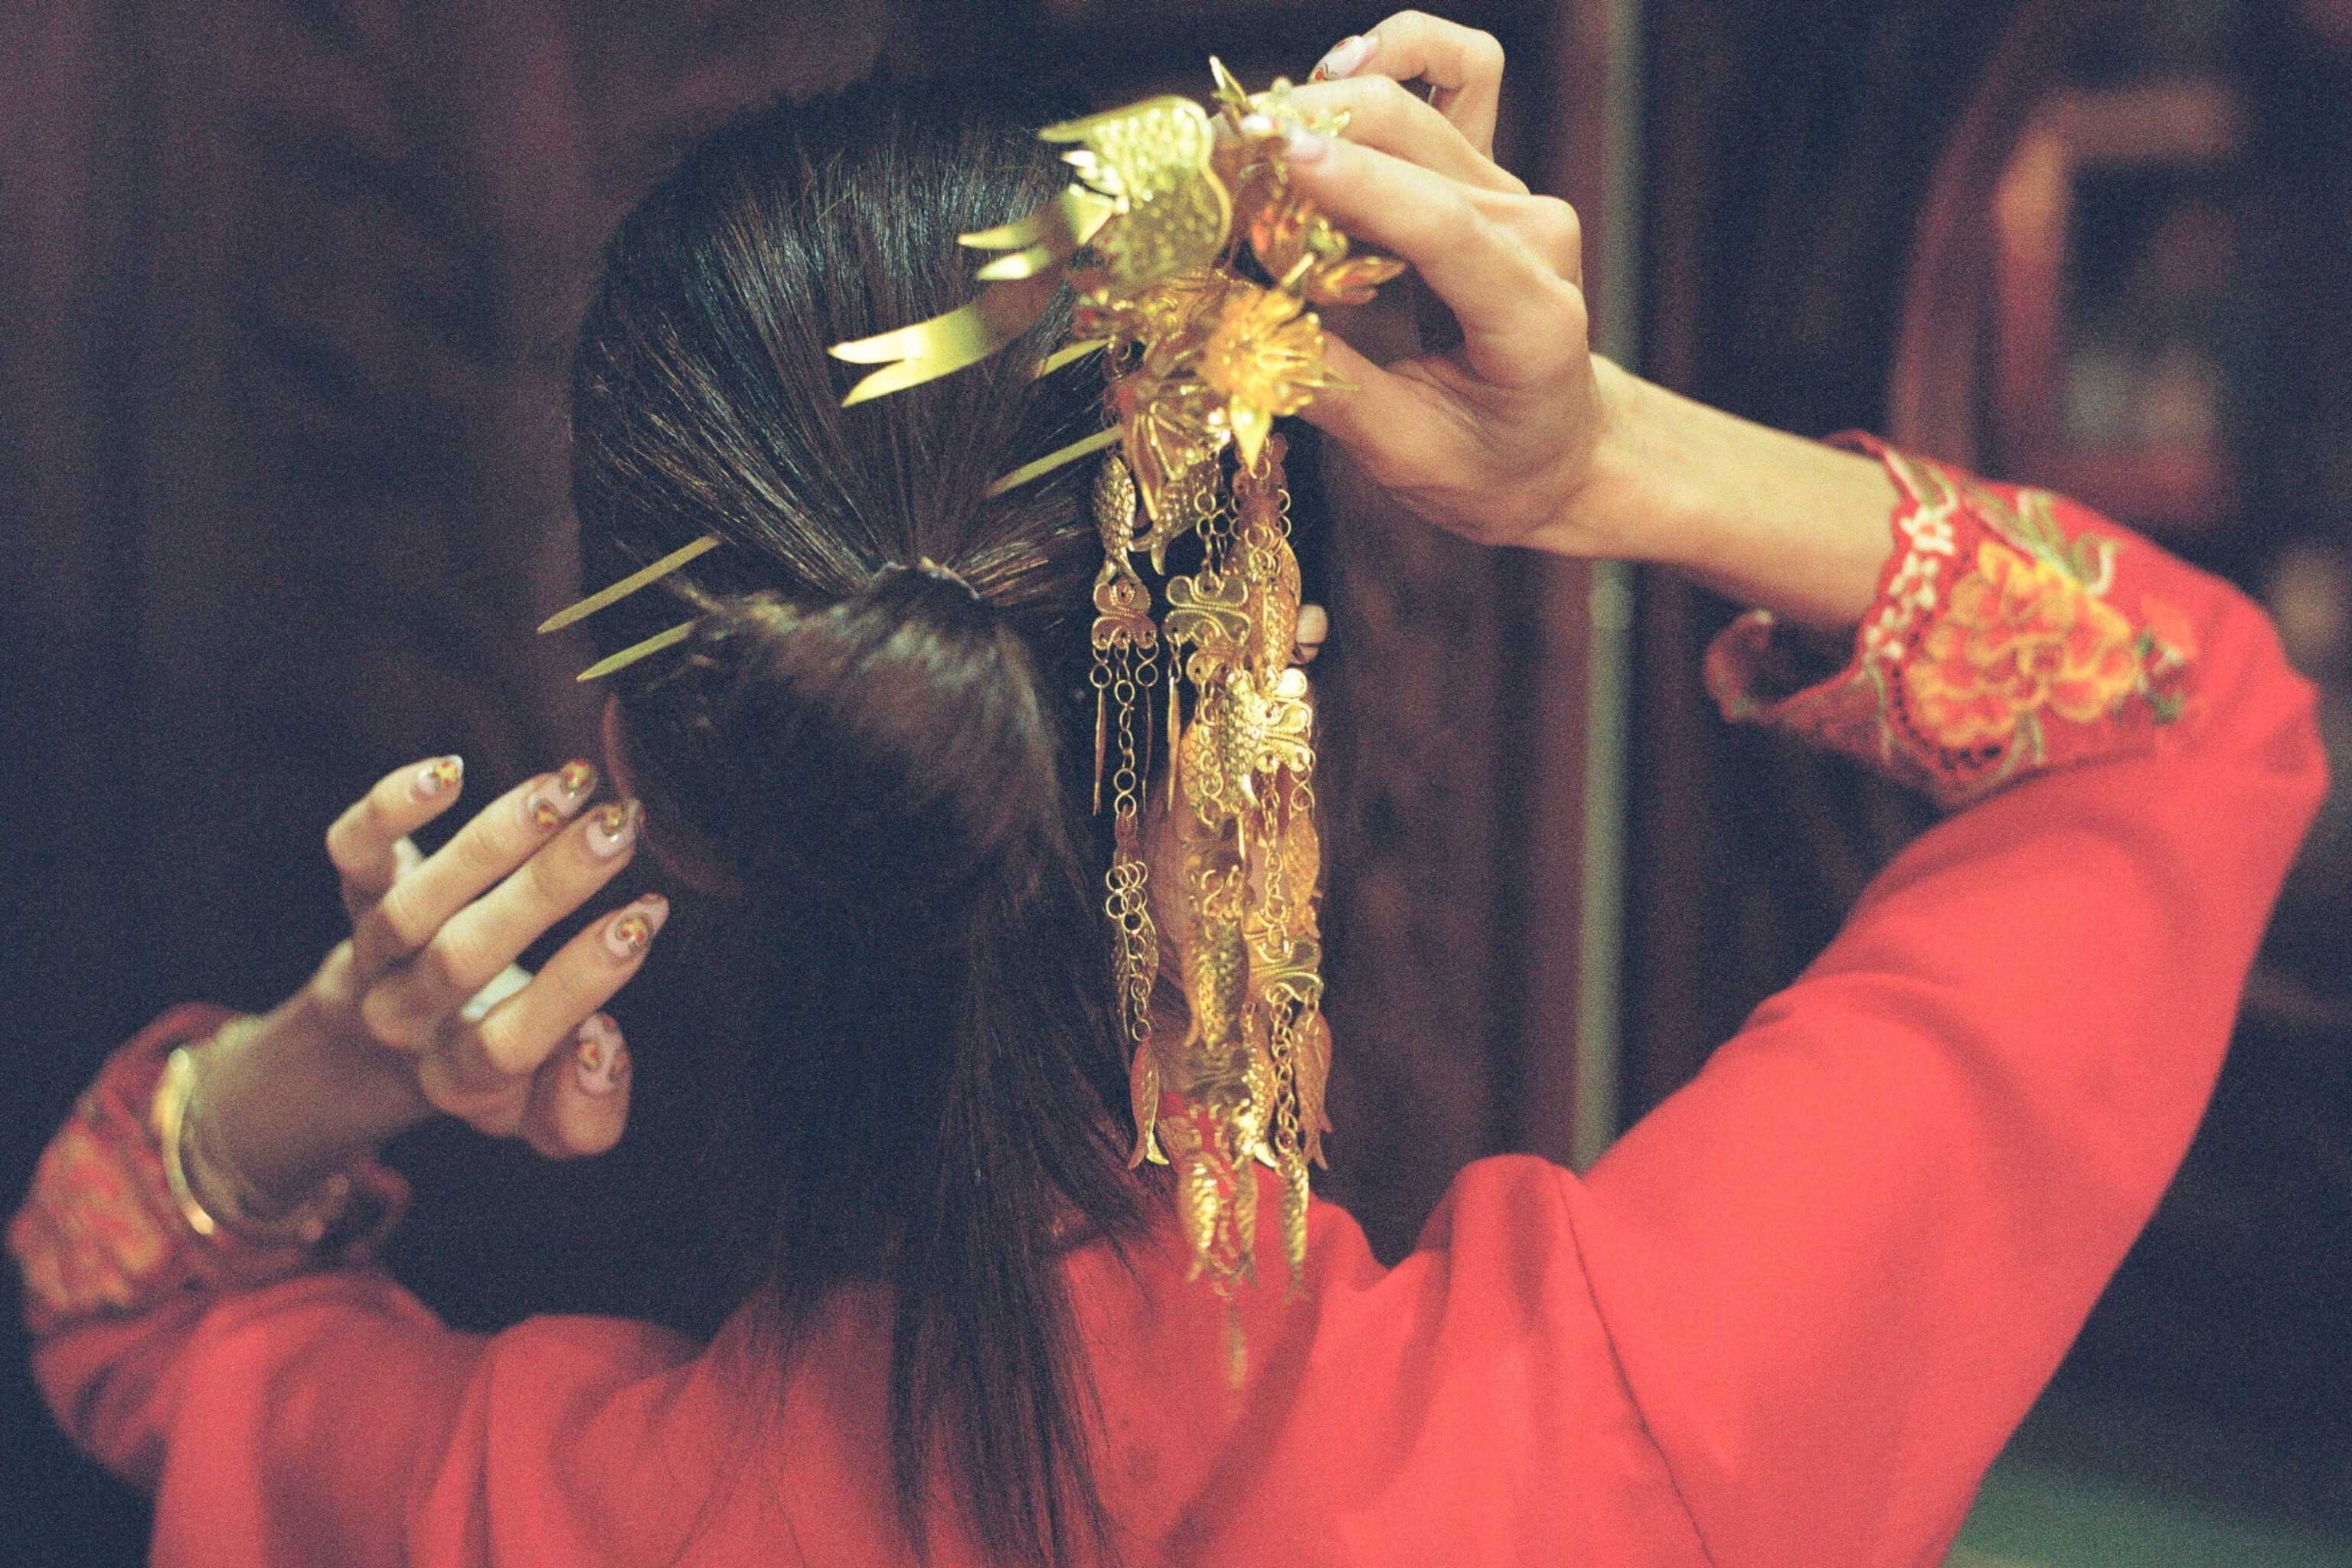 Một phụ nữ thử chiếc lược truyền thống của người Peranakan. Ảnh: National Geographic